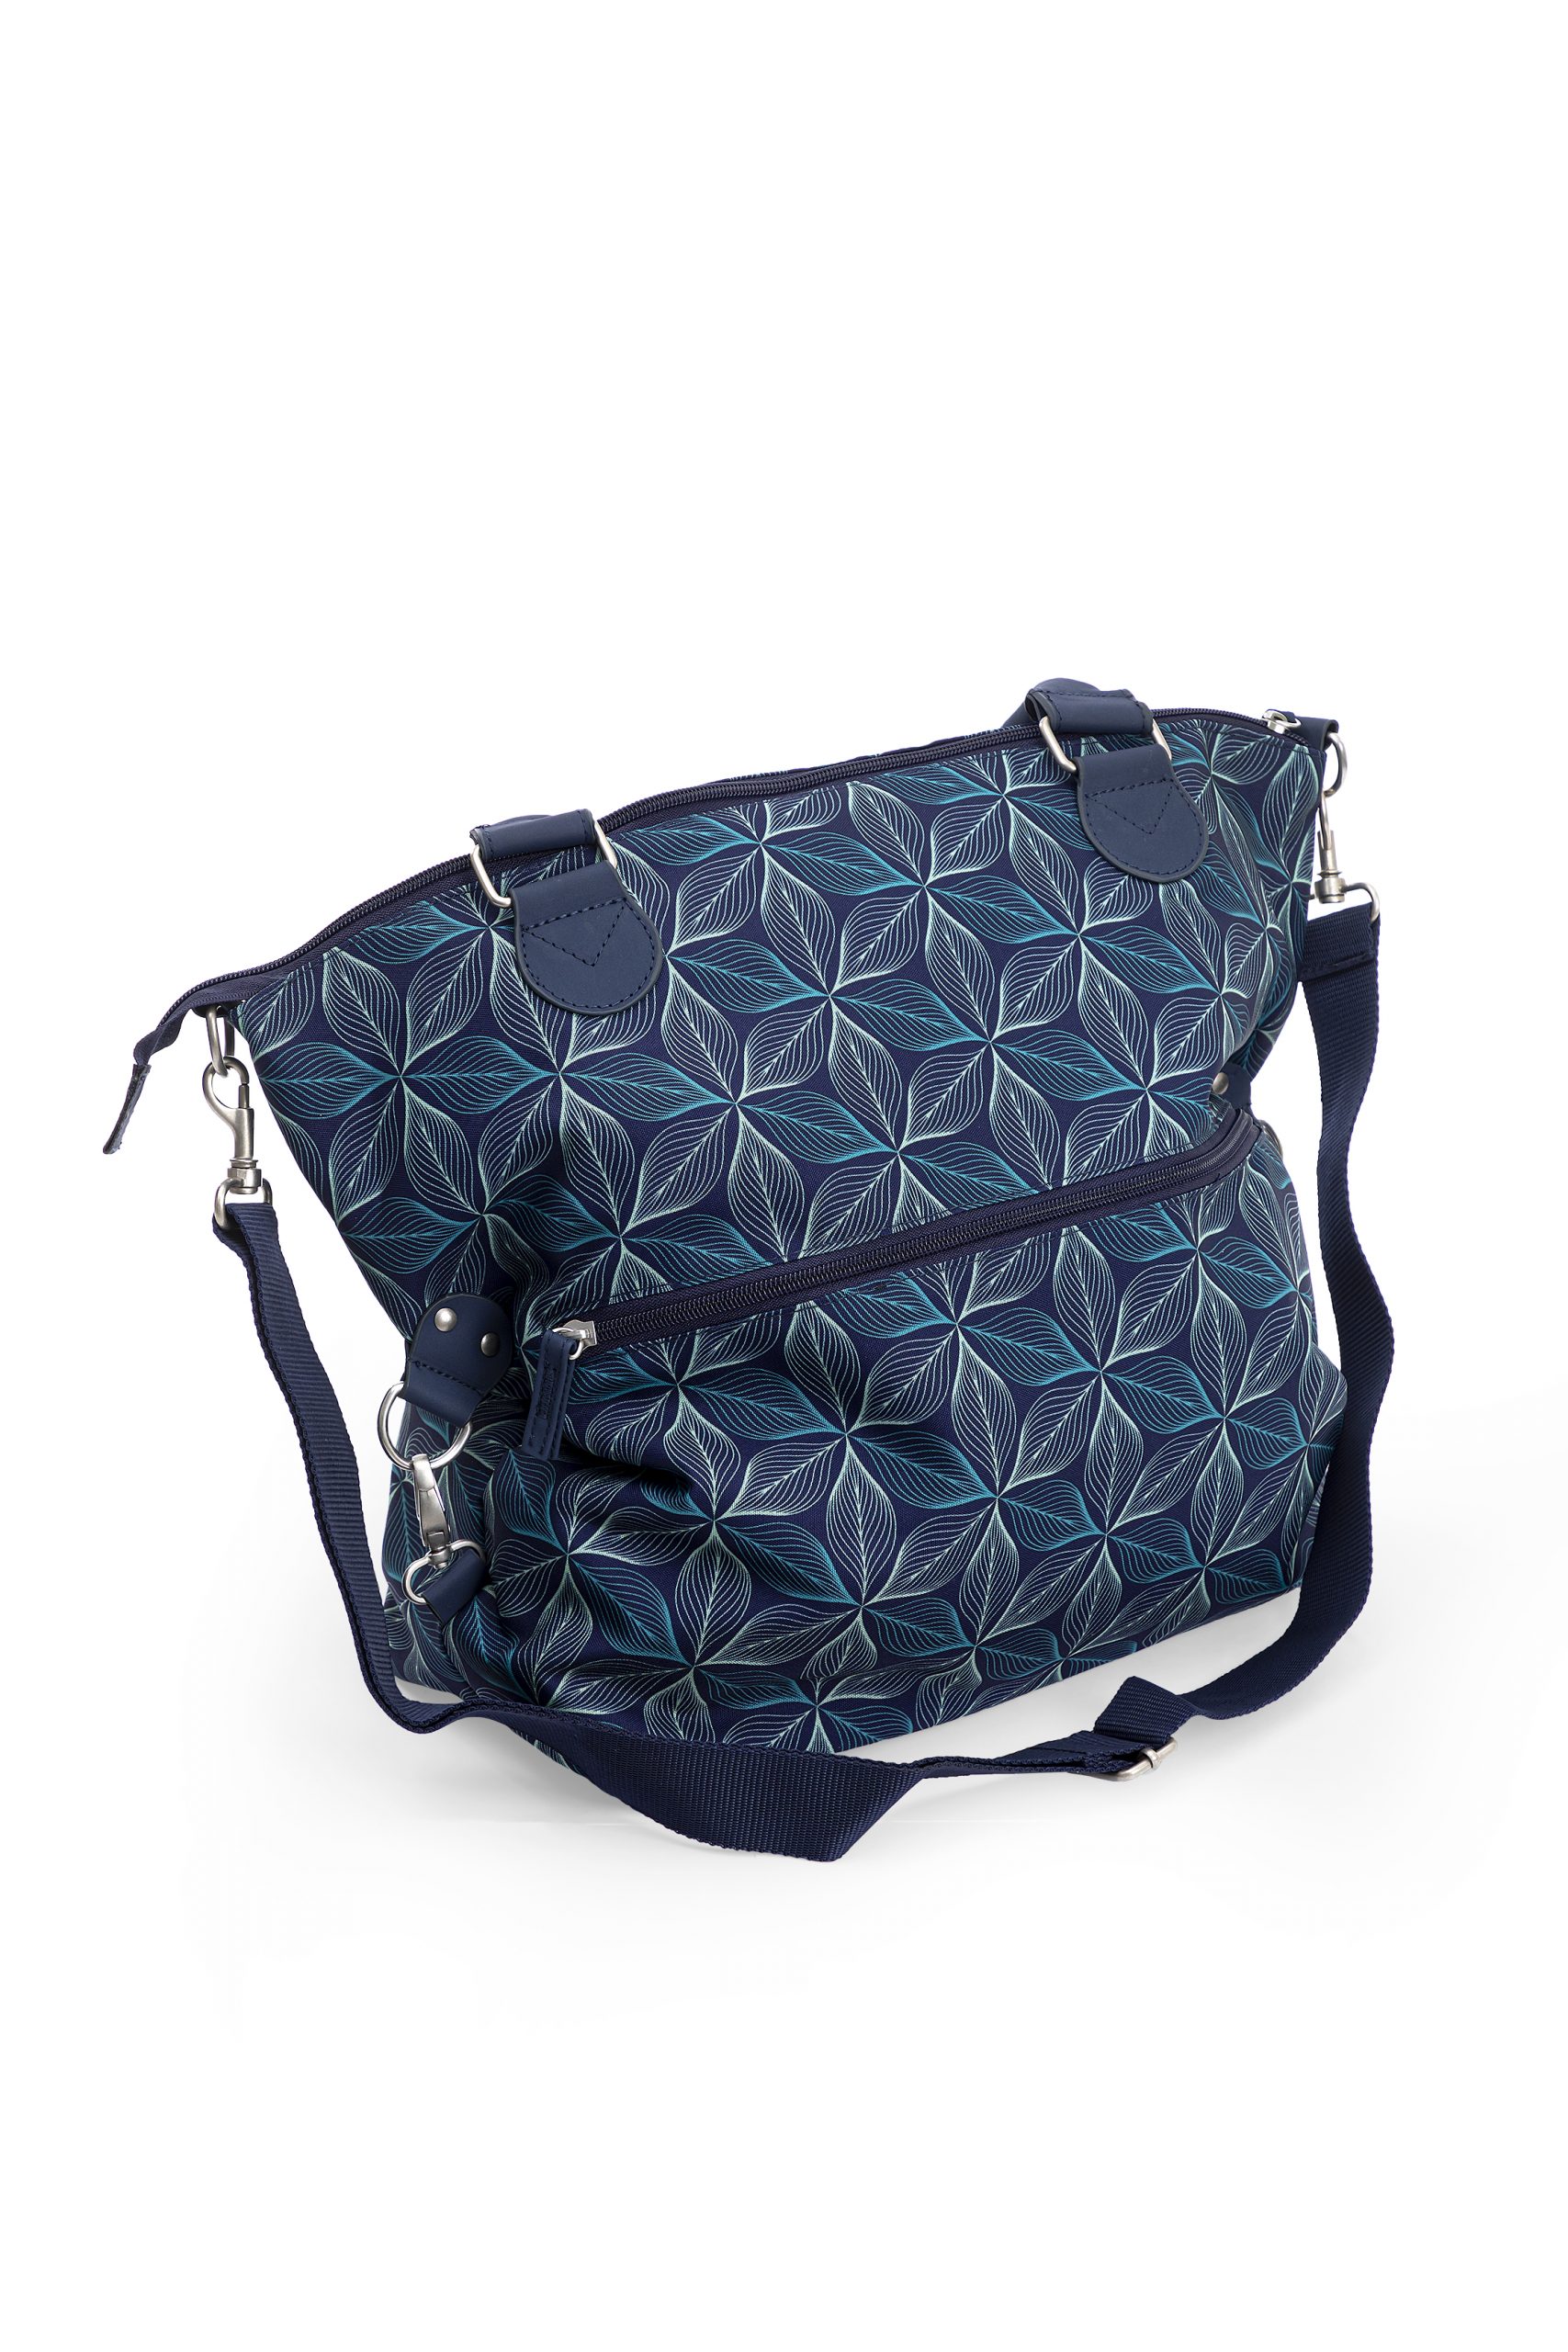 Giordani - smart bag blu - Giordani